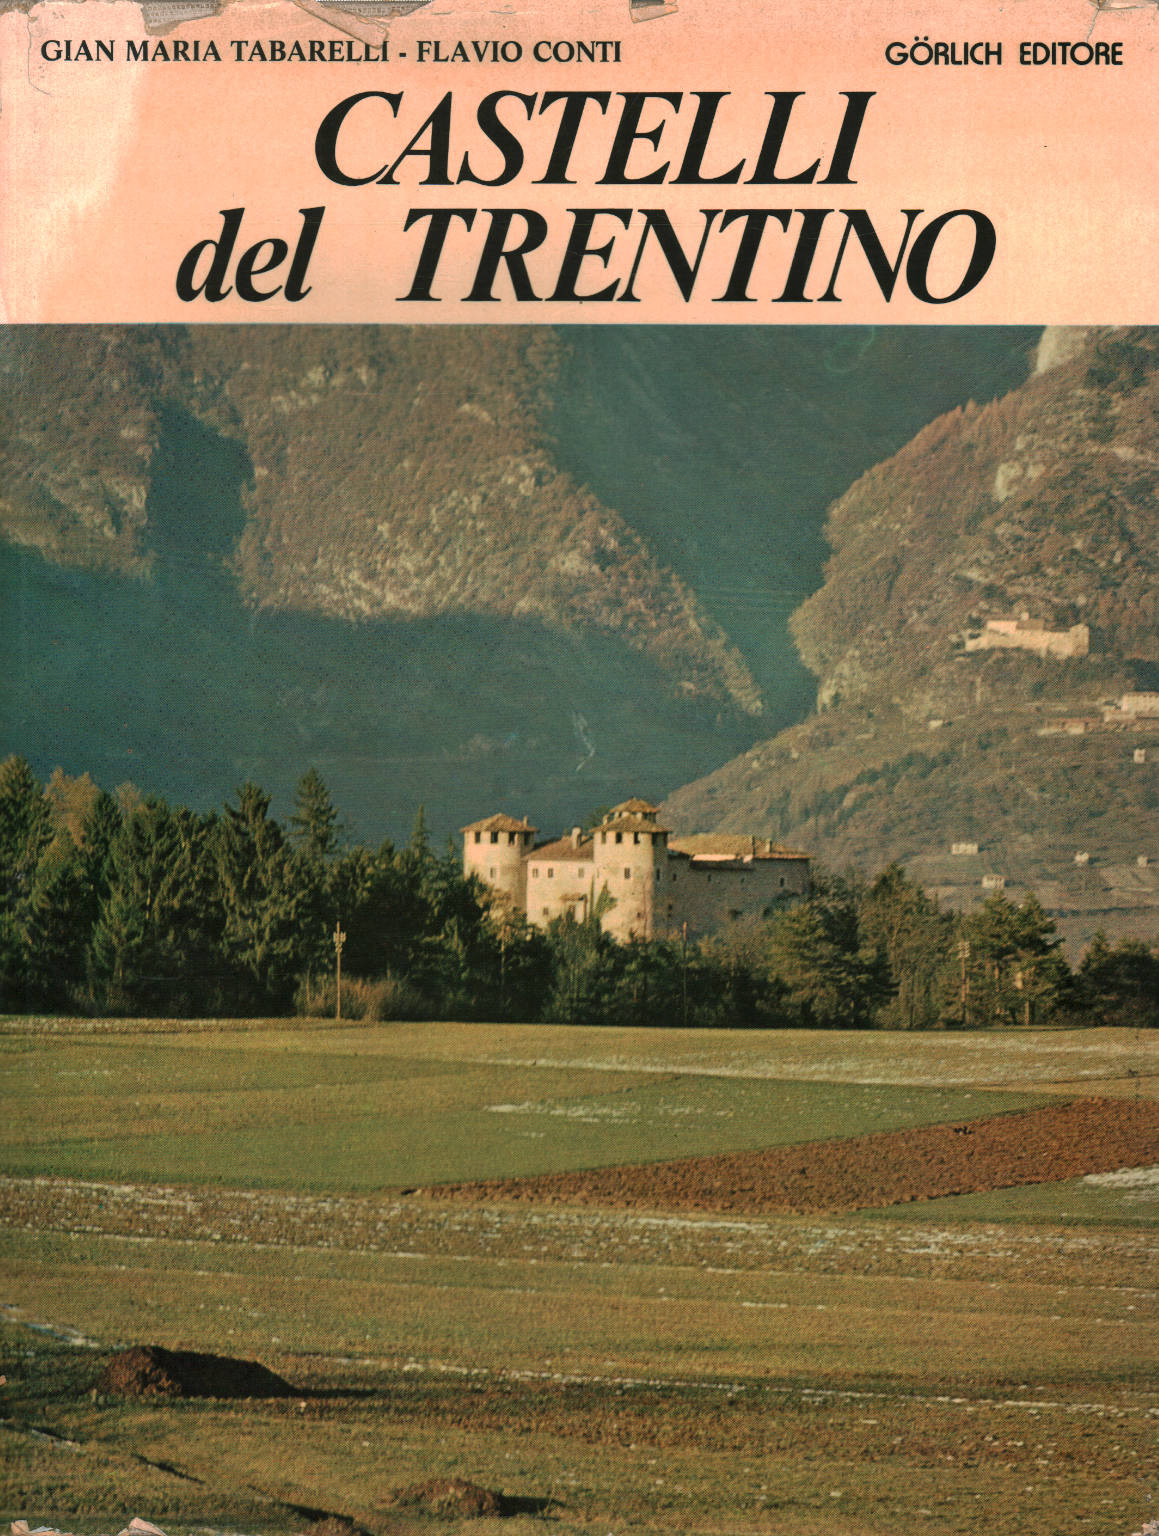 Castelli del Trentino, Gian Maria Tabarelli Flavio Conti